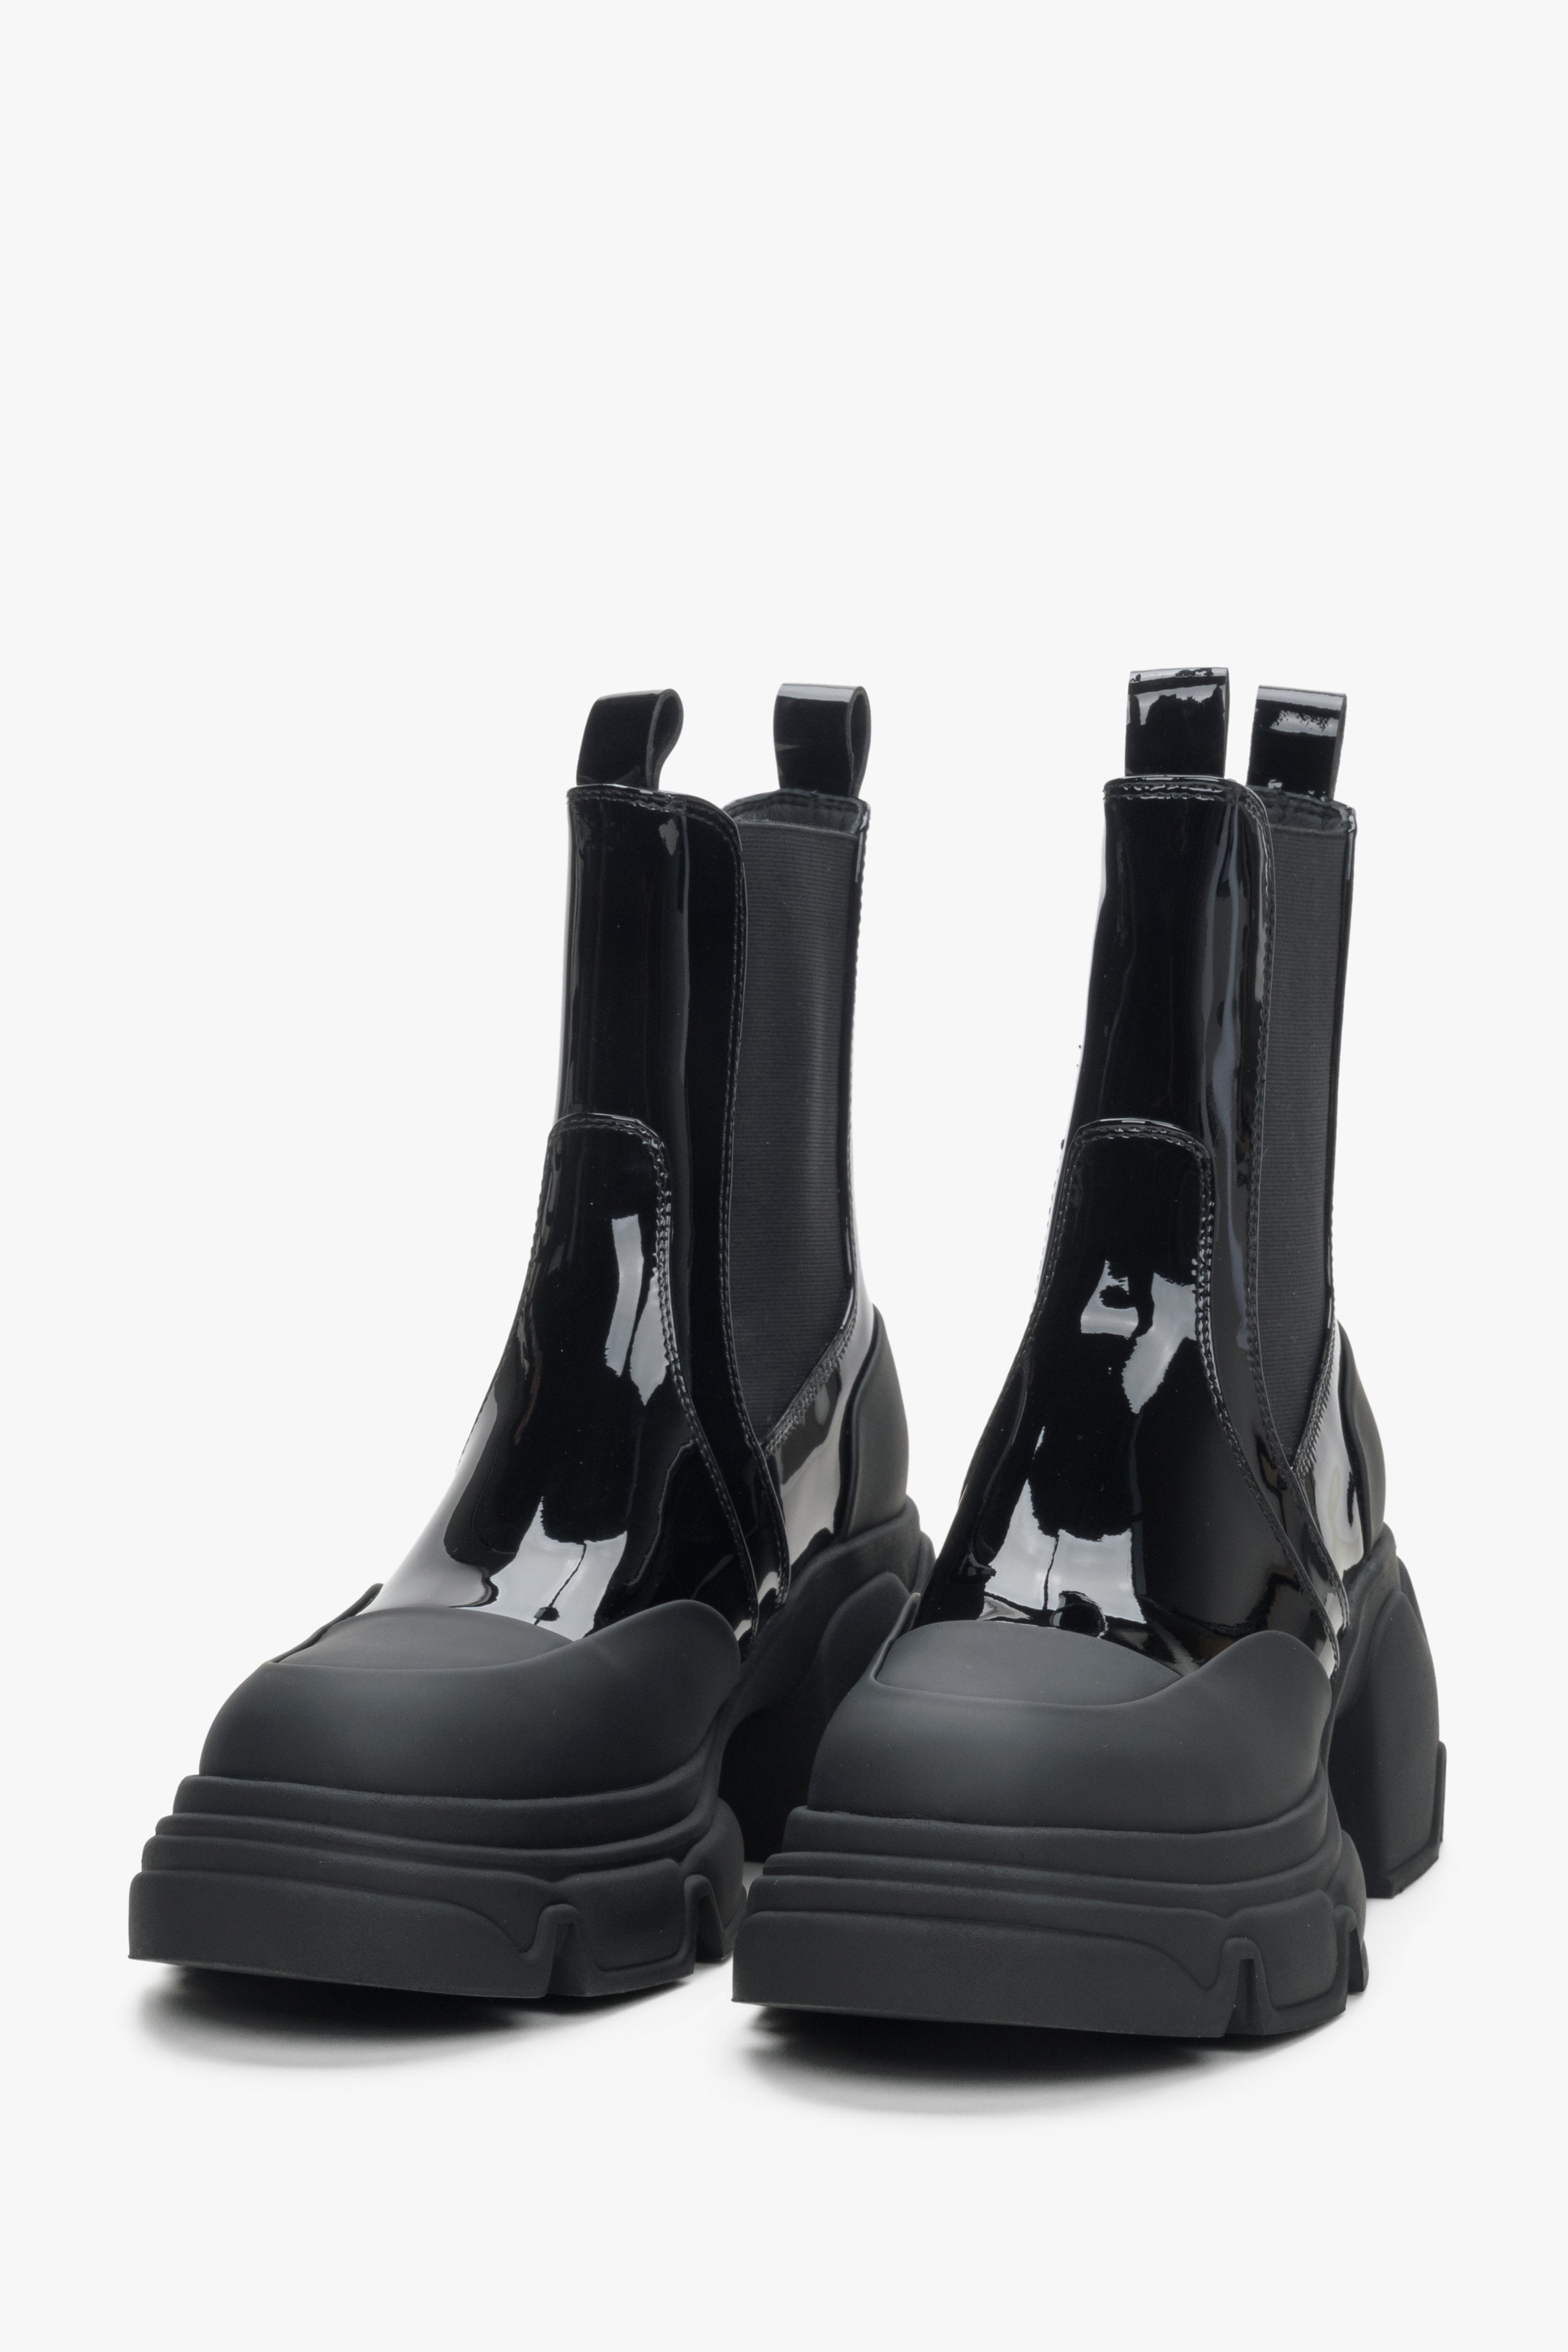 Czarne skórzane sztyblety damskie Estro - zbliżenie na czubek butów.